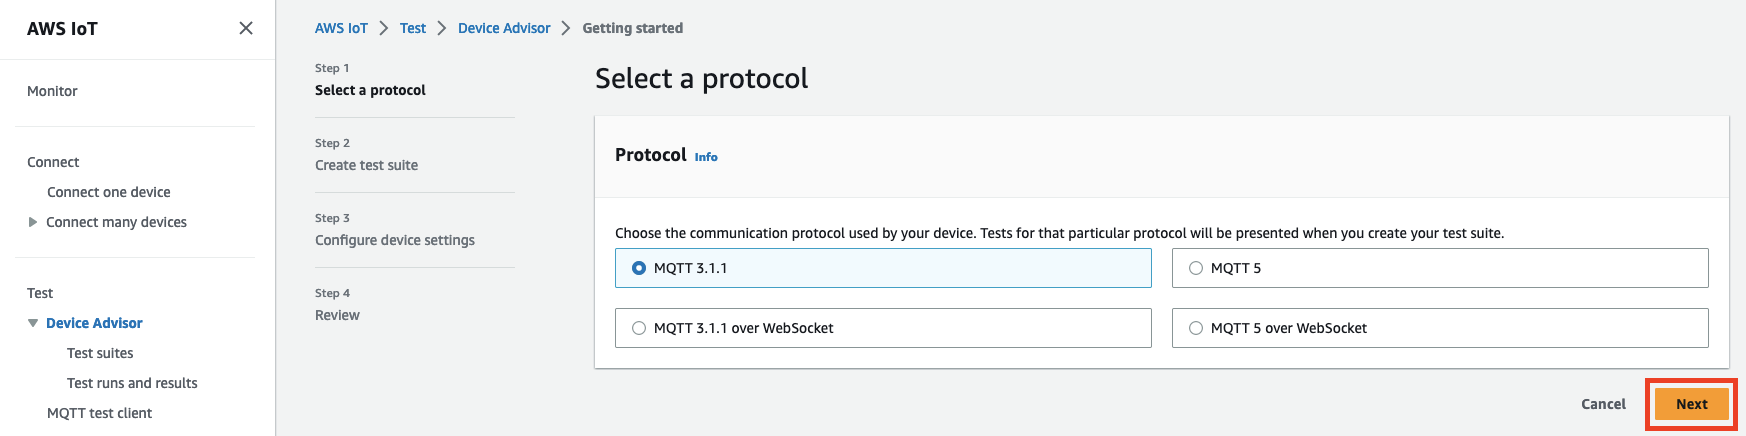 裝置建議程式介面顯示用於測試 IoT 裝置的通訊協定 (MQTT 3.1.1、MQTT 3.1.1 以上 WebSocket、MQTT 5 以上) 的選項。 WebSocket